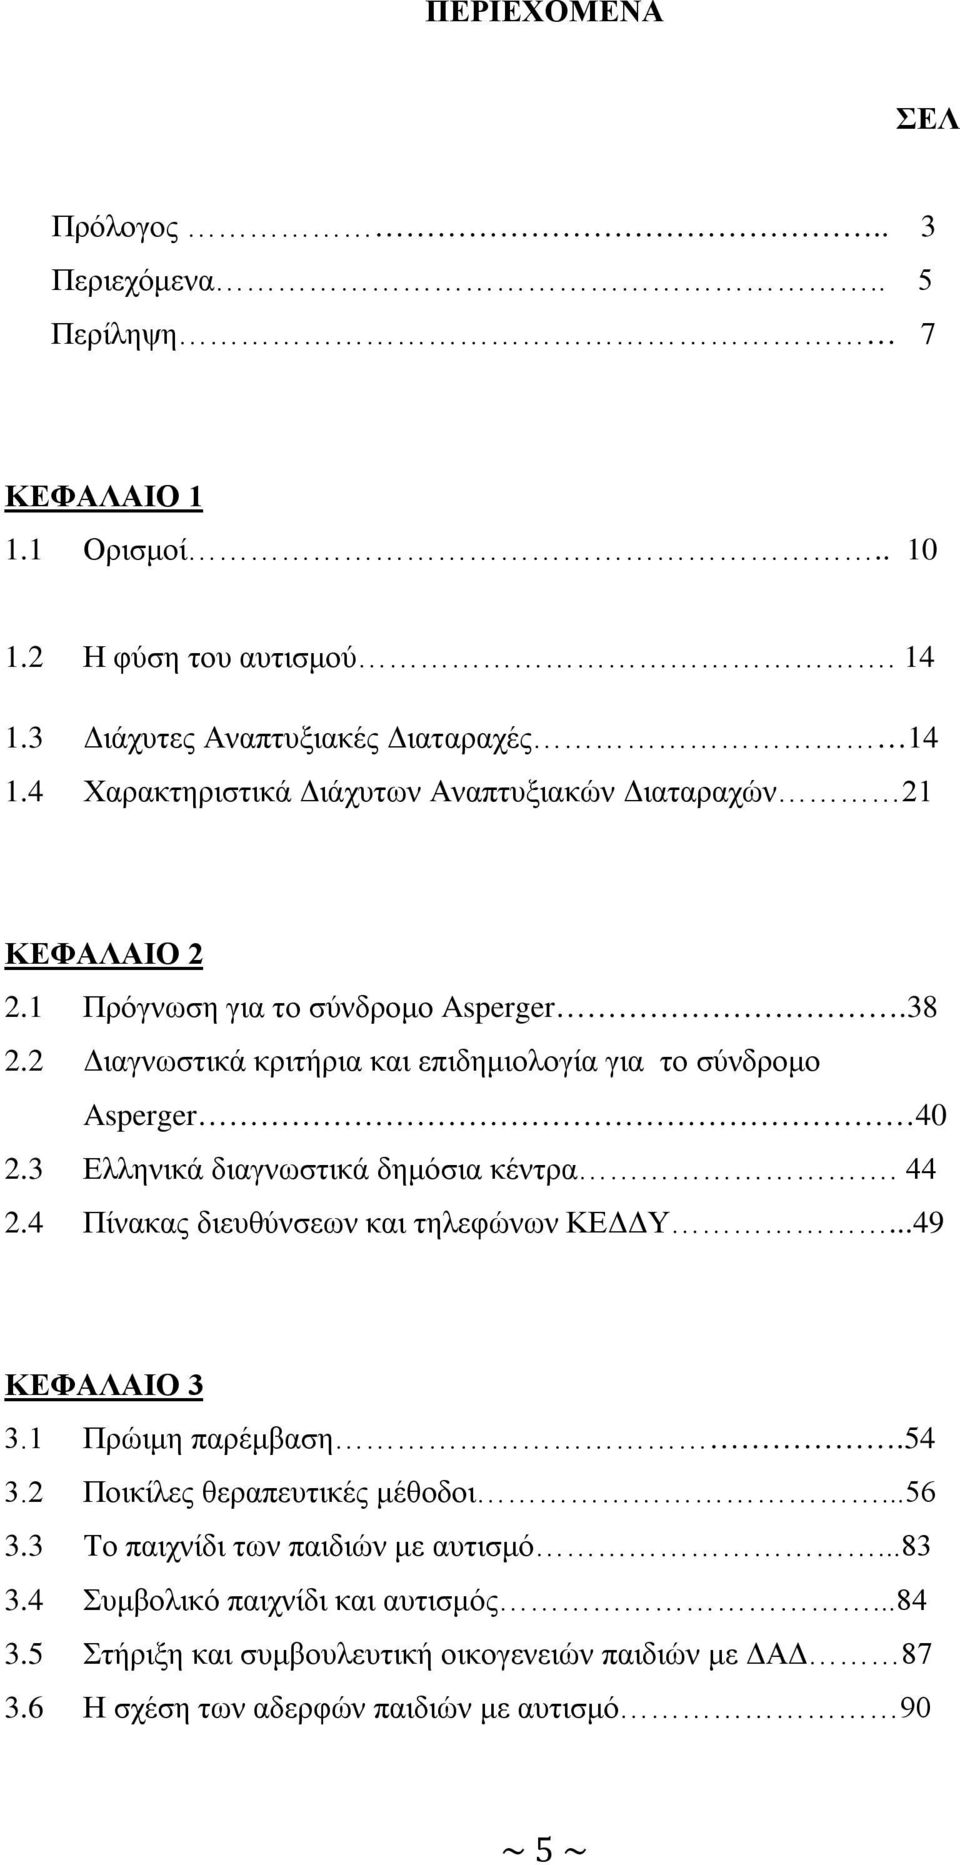 2 Διαγνωστικά κριτήρια και επιδημιολογία για το σύνδρομο Asperger 40 2.3 Ελληνικά διαγνωστικά δημόσια κέντρα. 44 2.4 Πίνακας διευθύνσεων και τηλεφώνων ΚΕΔΔΥ...49 ΚΕΦΑΛΑΙΟ 3 3.